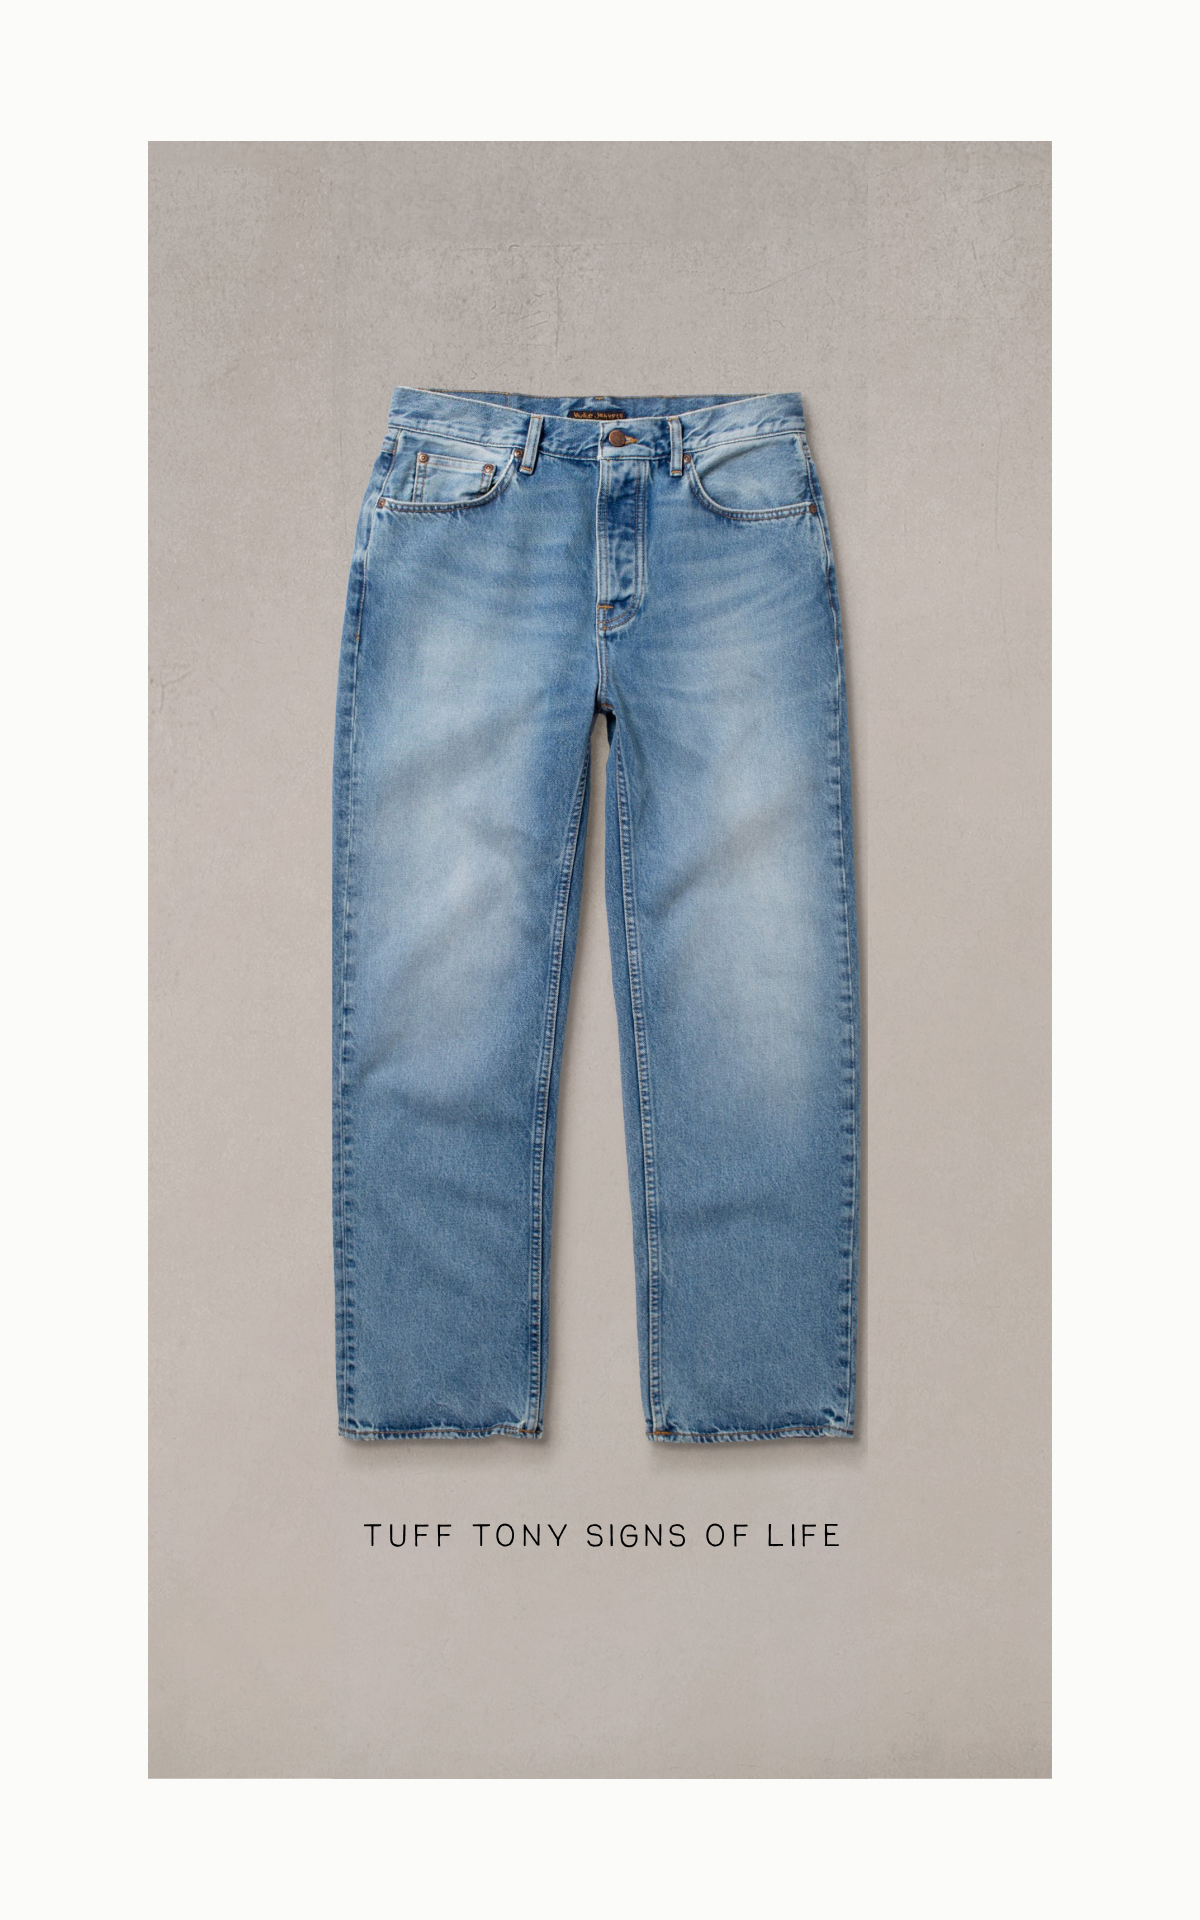 Women's Low Waist Jeans, Explore our New Arrivals